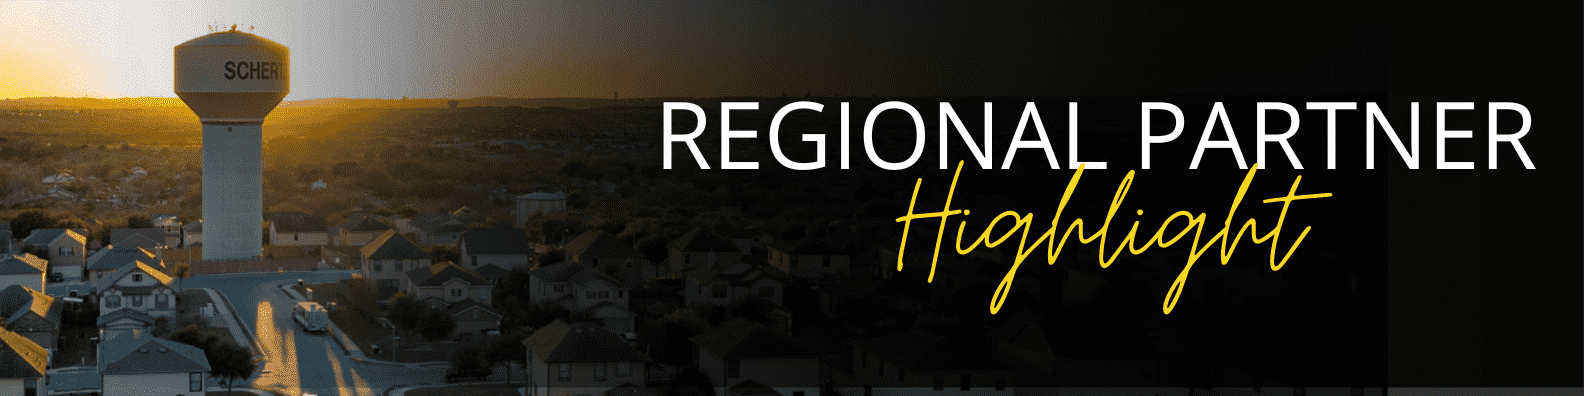 regional partner highlight graphic